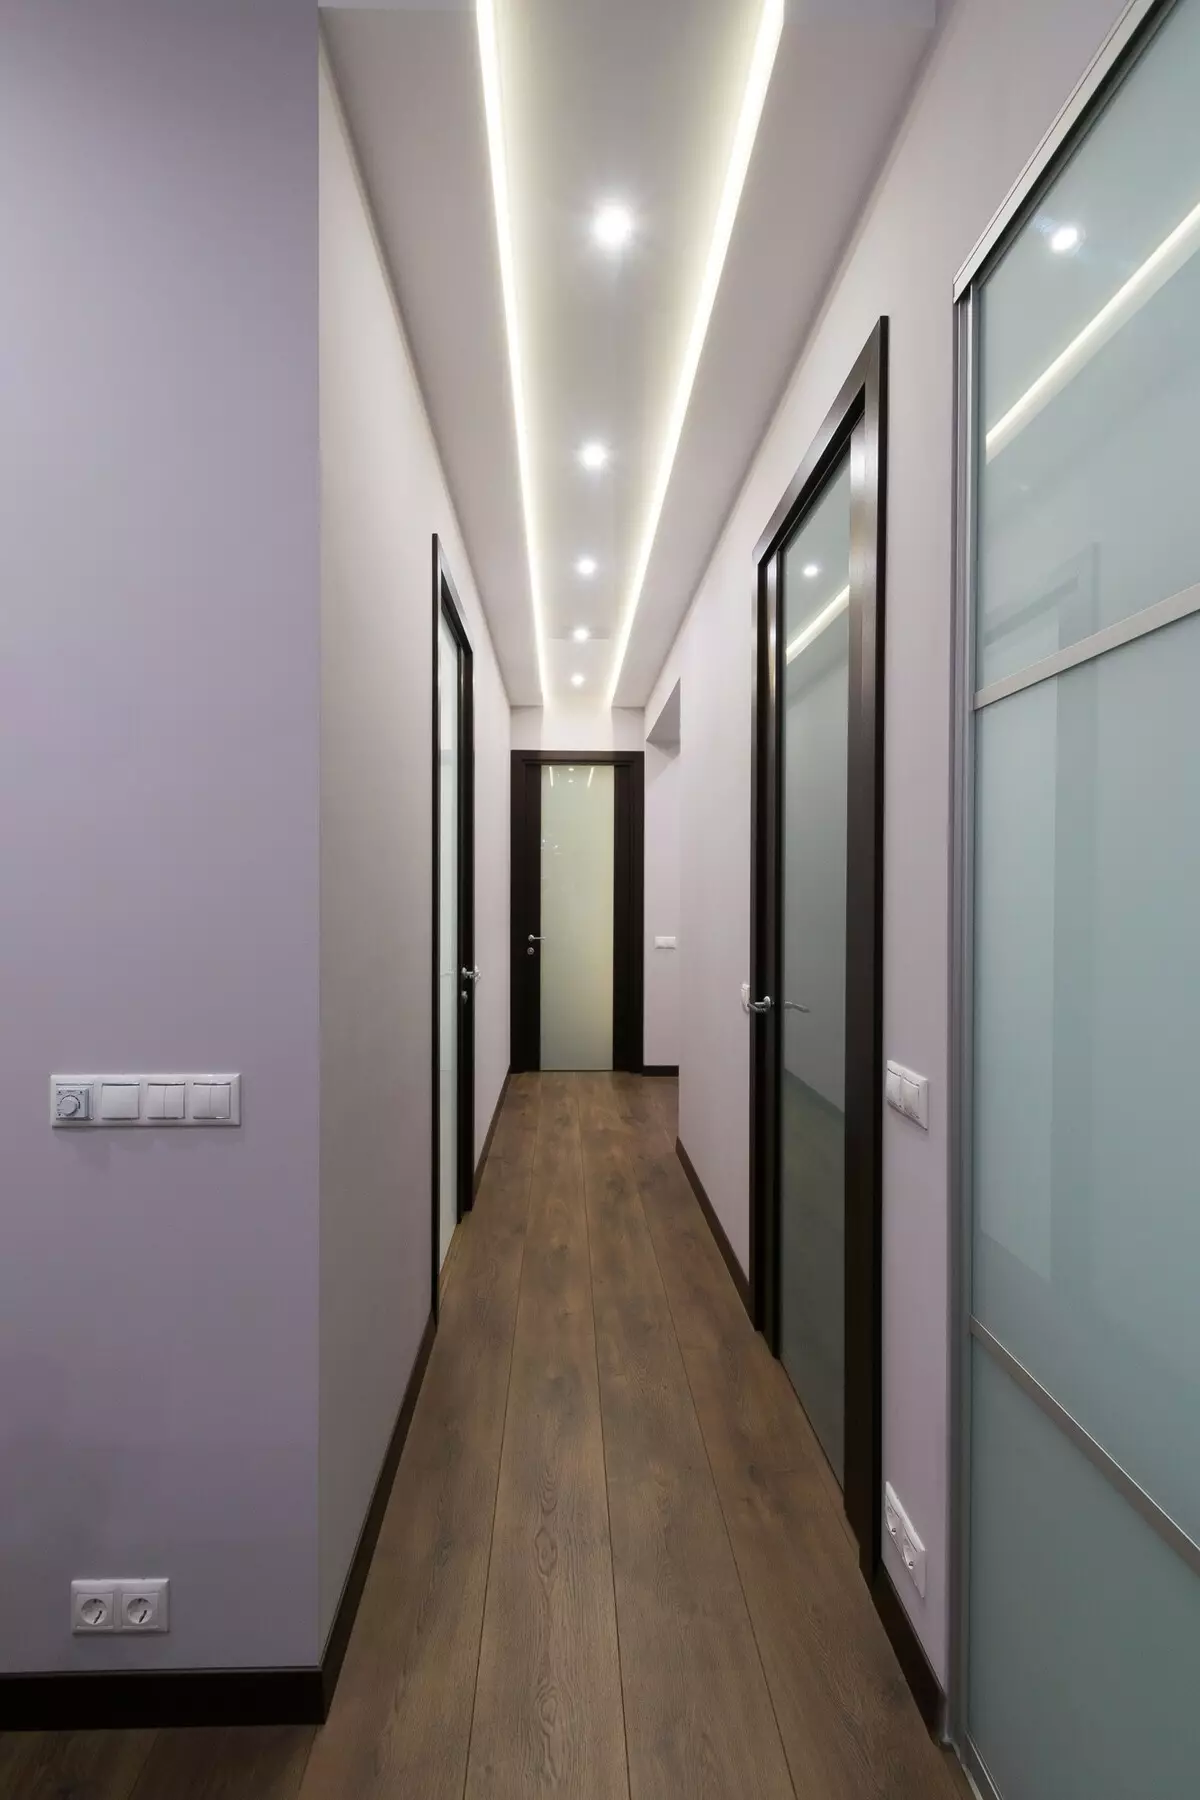 תאורה במסדרון (63 תמונות): אור במסדרון הדירה עם תקרה מתיחה, תאורה הרצפה עם חיישן תנועה תאורה לילה. איך לארגן תאורה במסדרון צר ארוך עם מסדרון? עיצוב מודרני בבית 9092_48